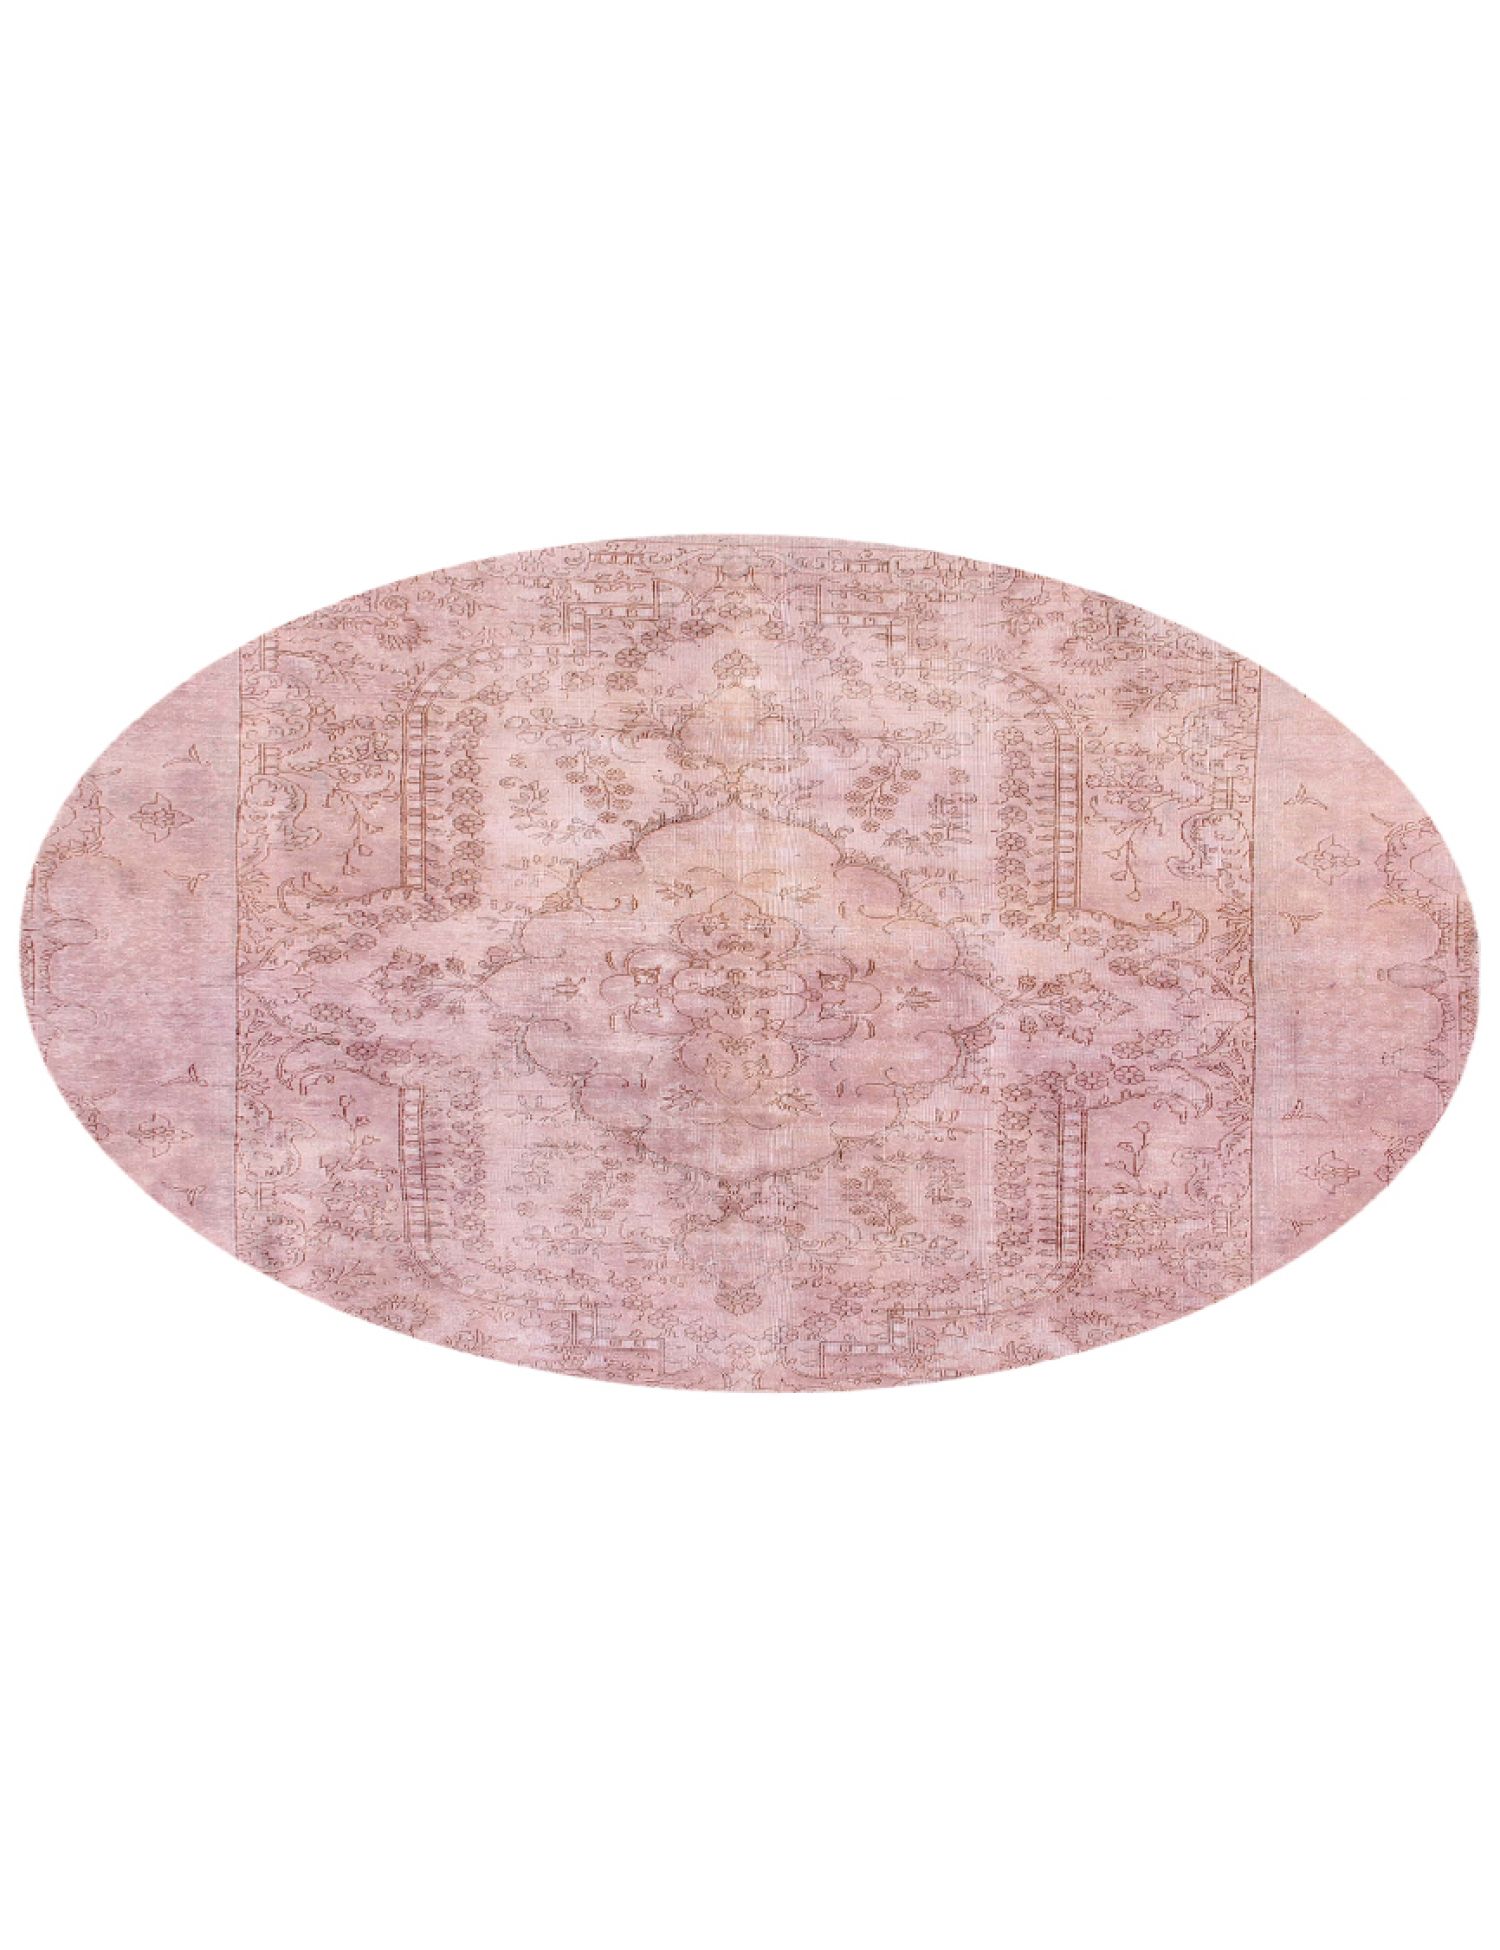 Persischer Vintage Teppich  rosa <br/>286 x 286 cm